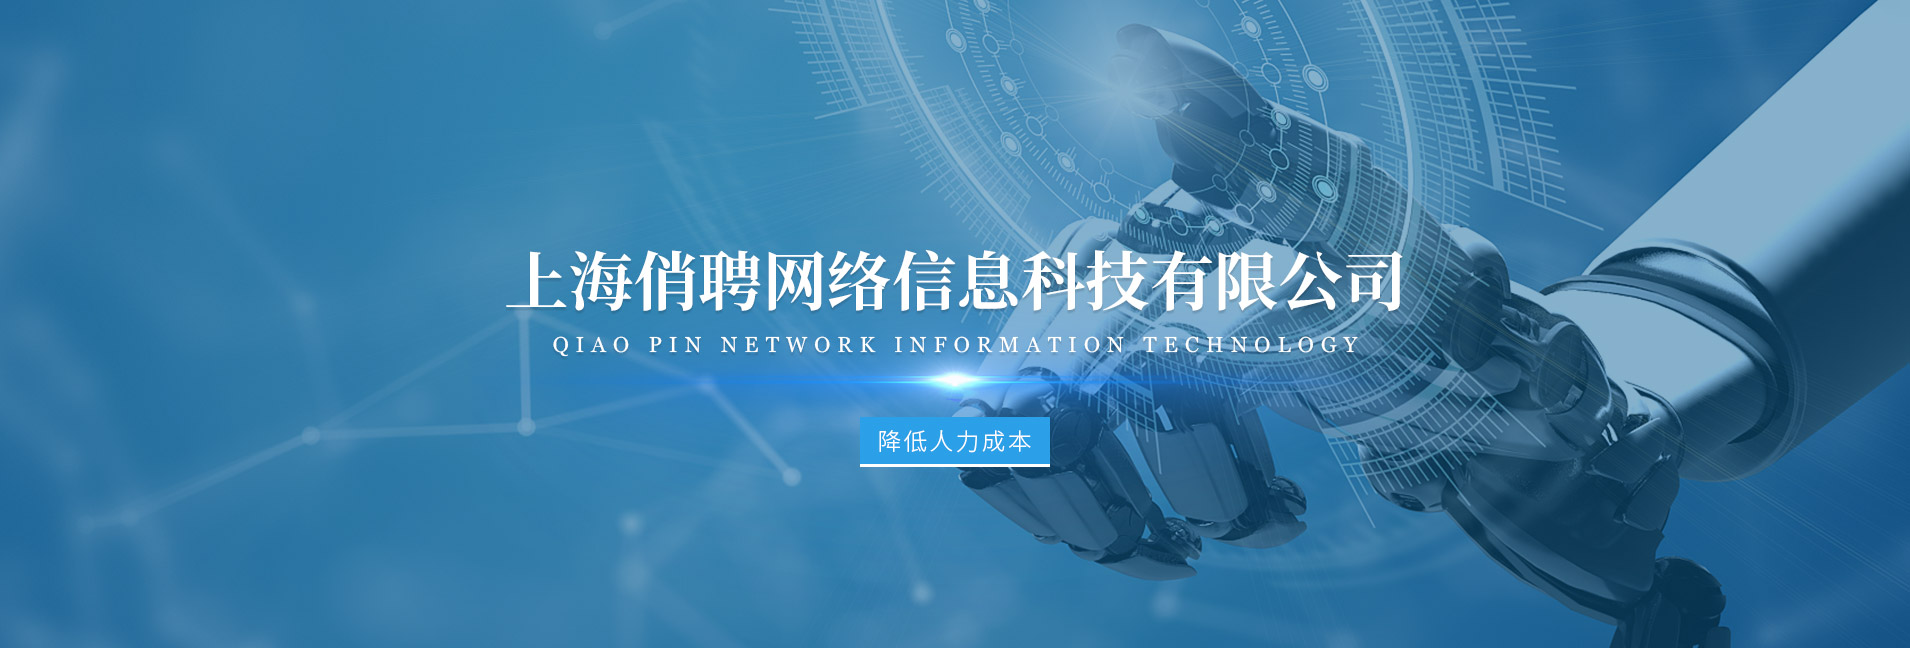 上海俏聘网络信息科技有限公司公司介绍